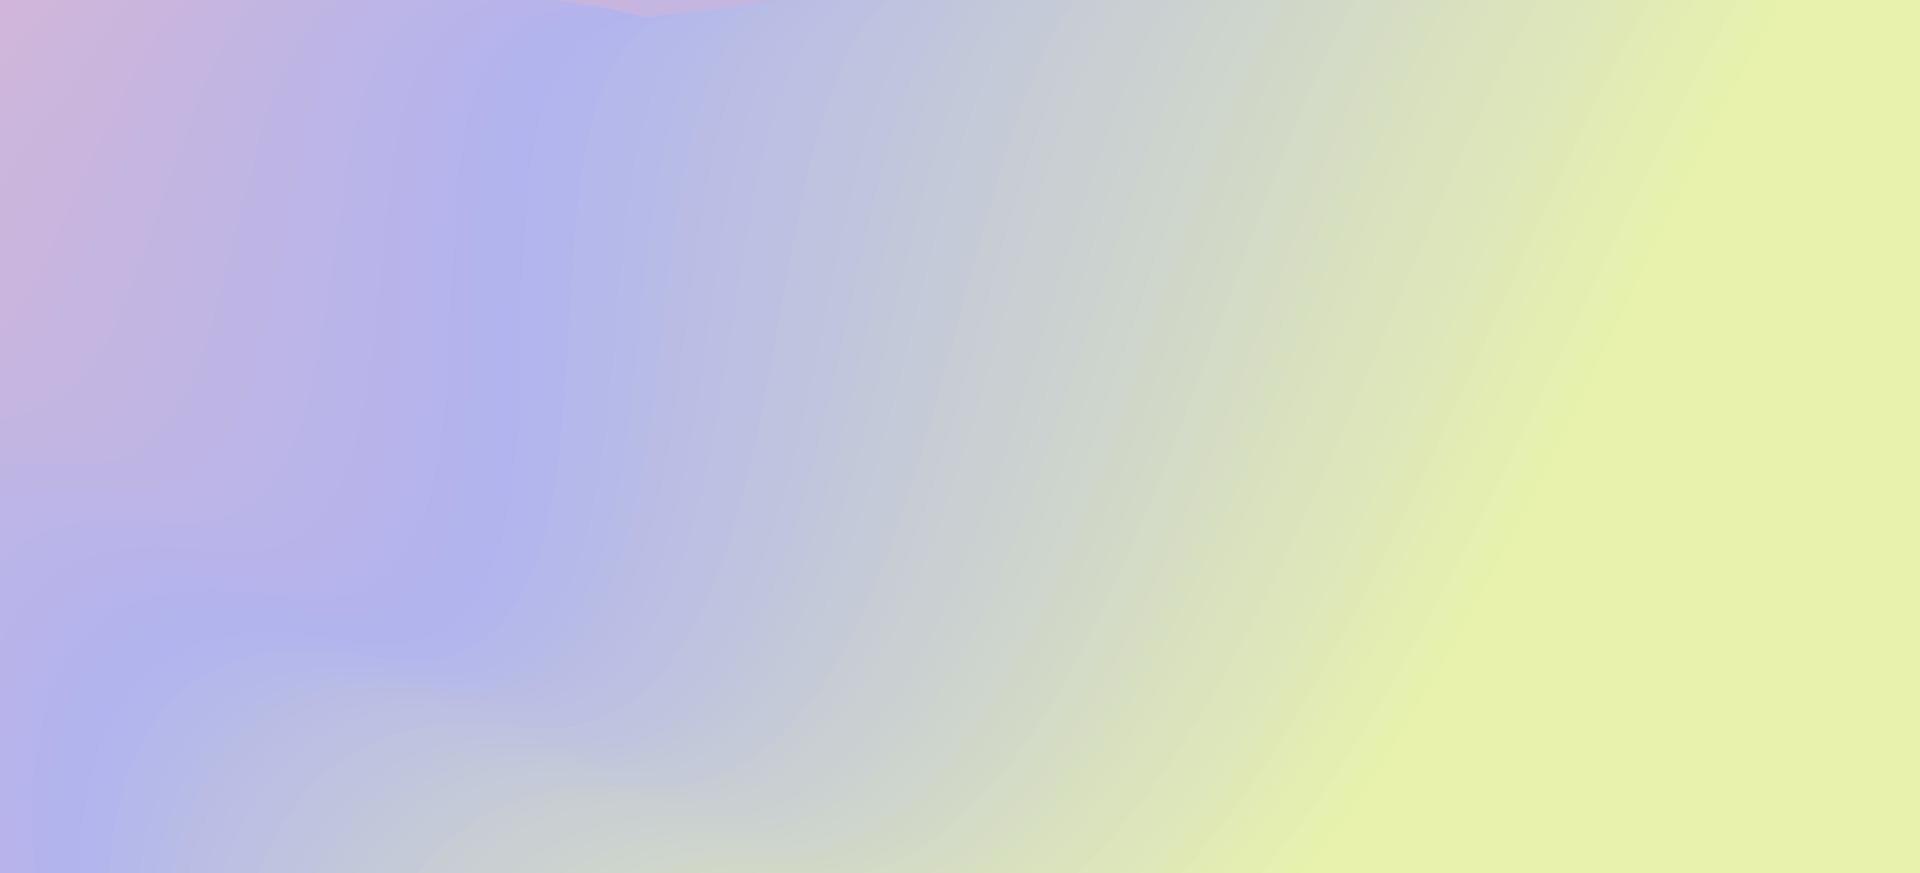 kleurrijk abstract helling achtergrond vrij vector